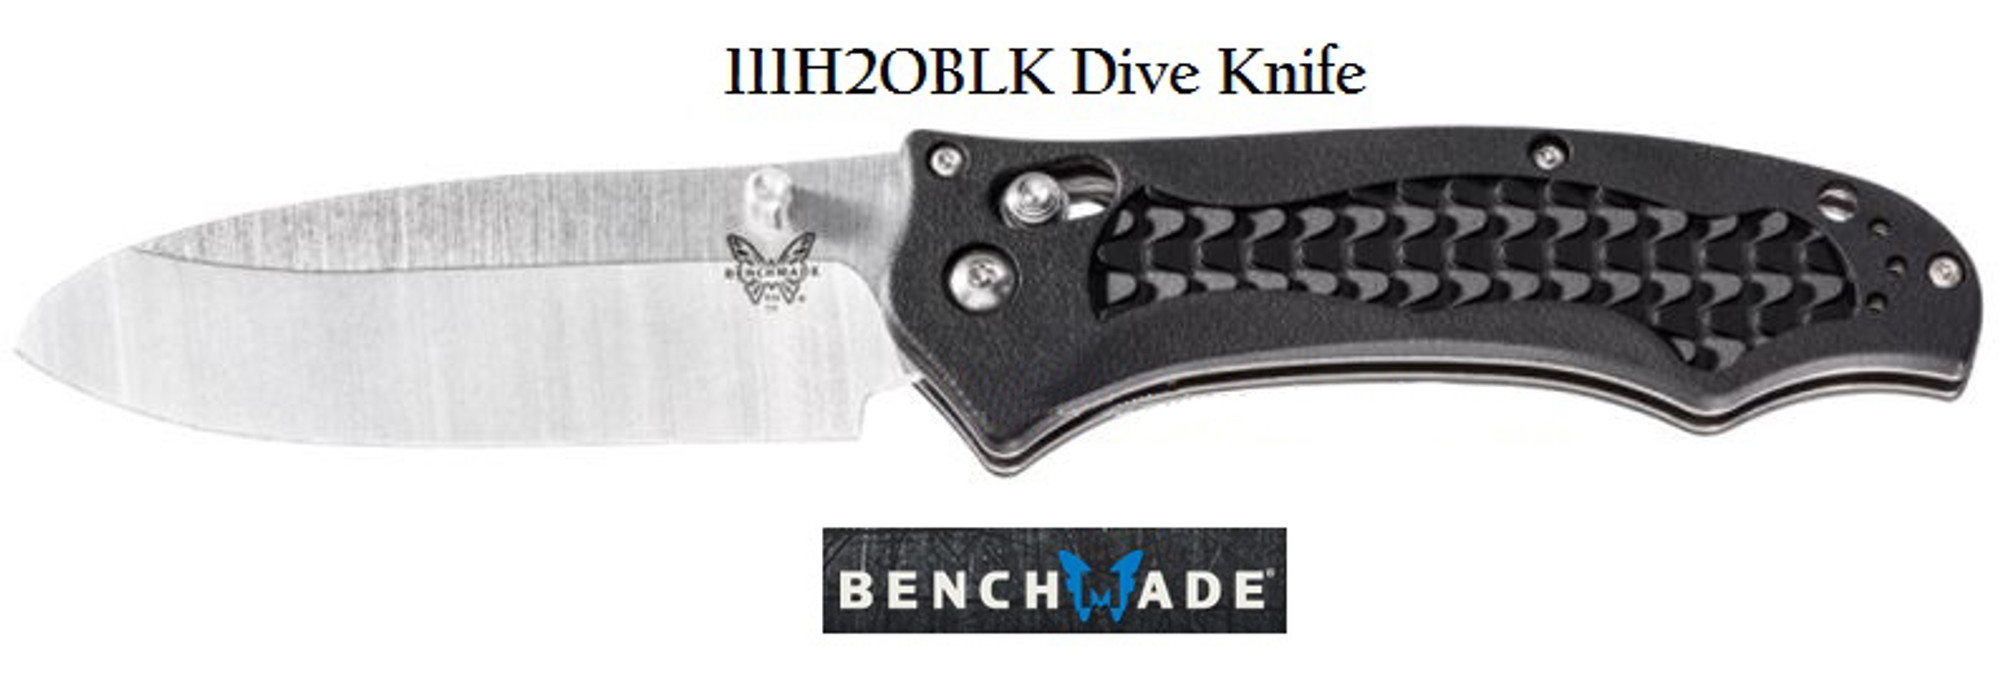 Benchmade 111H2OBLK Dive Knife Plain Edge, Black Handle